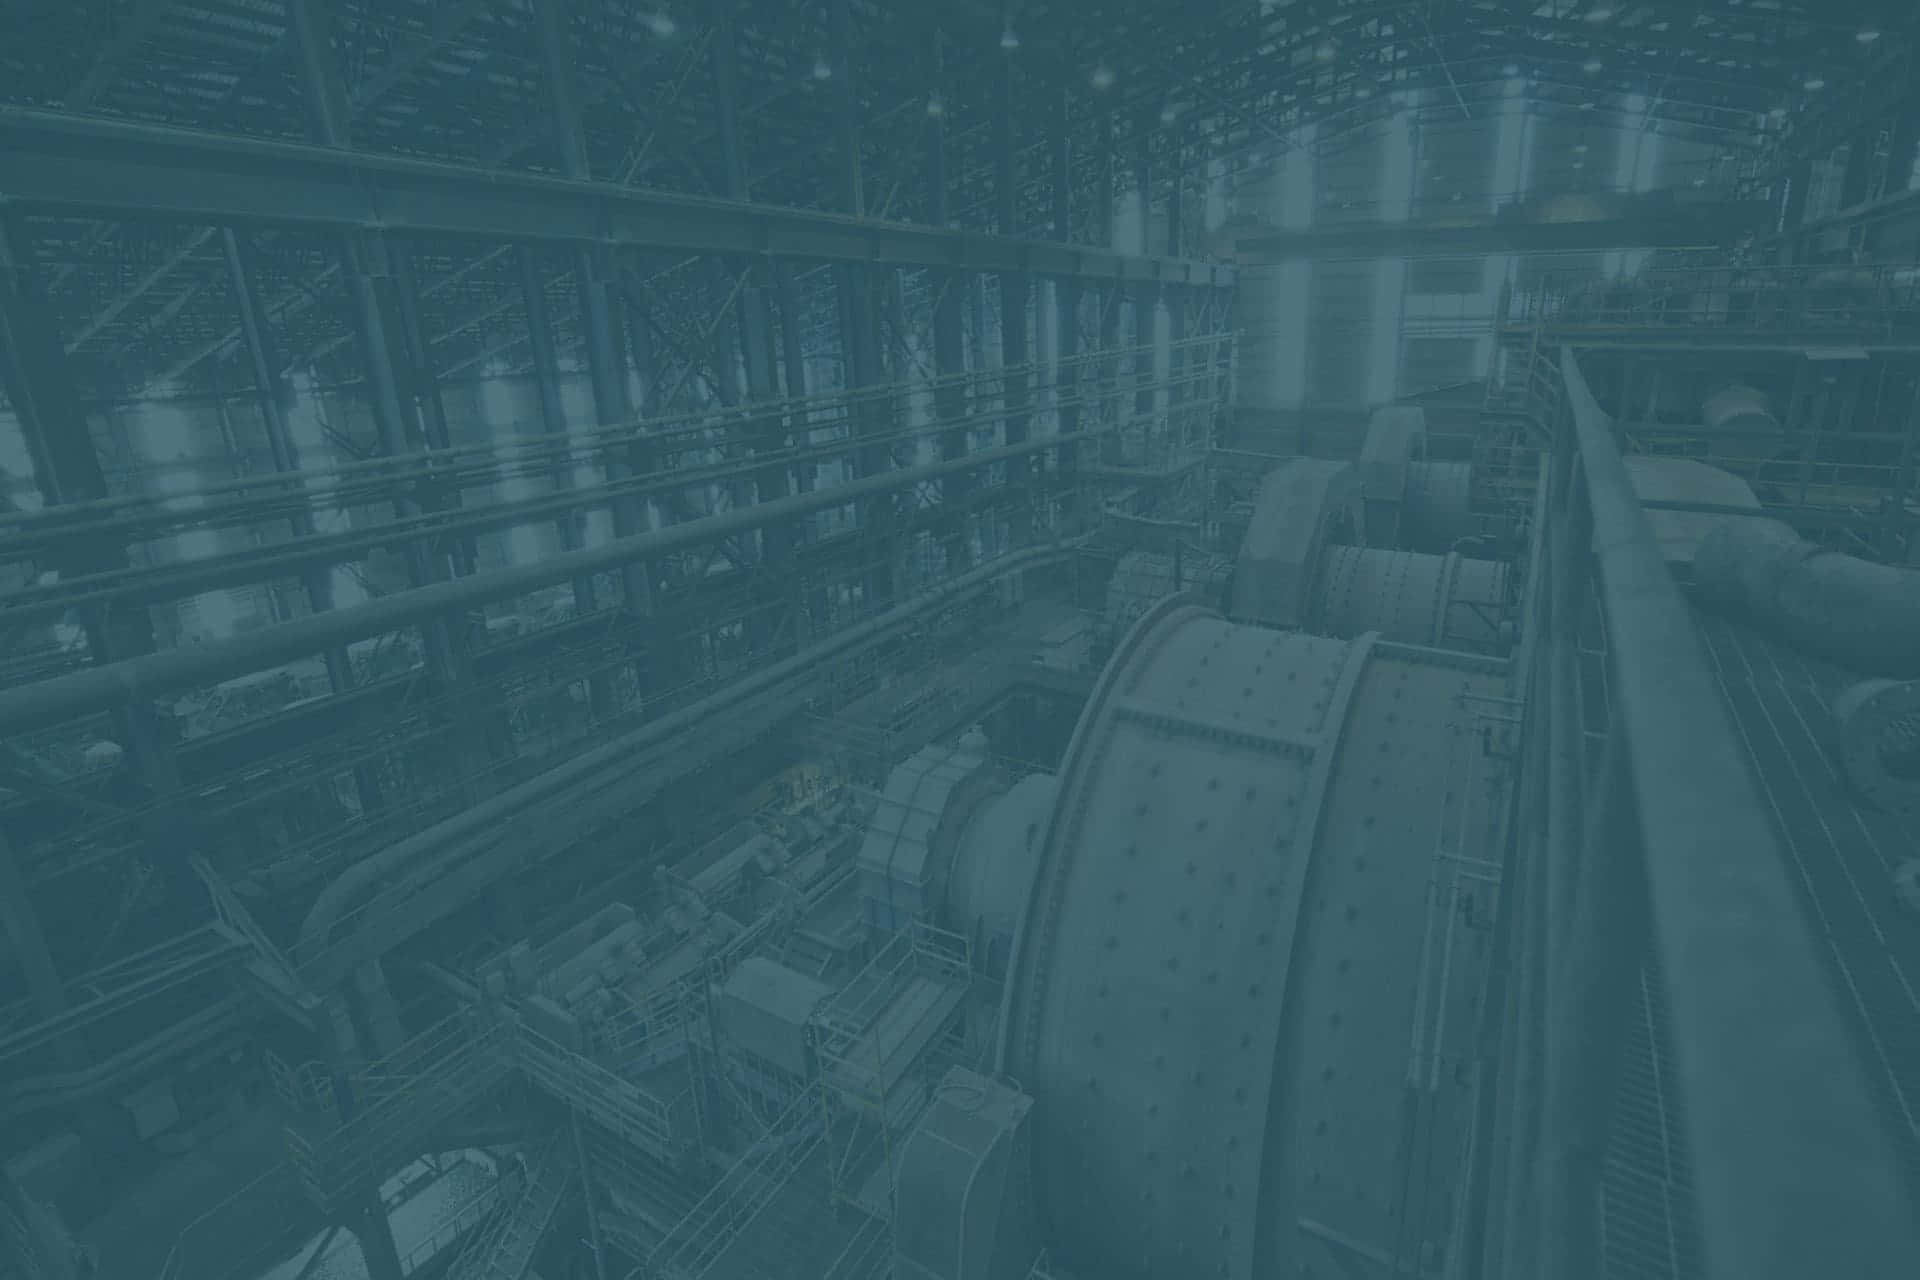 Enblå Bild Av En Fabrik Med Många Maskiner.